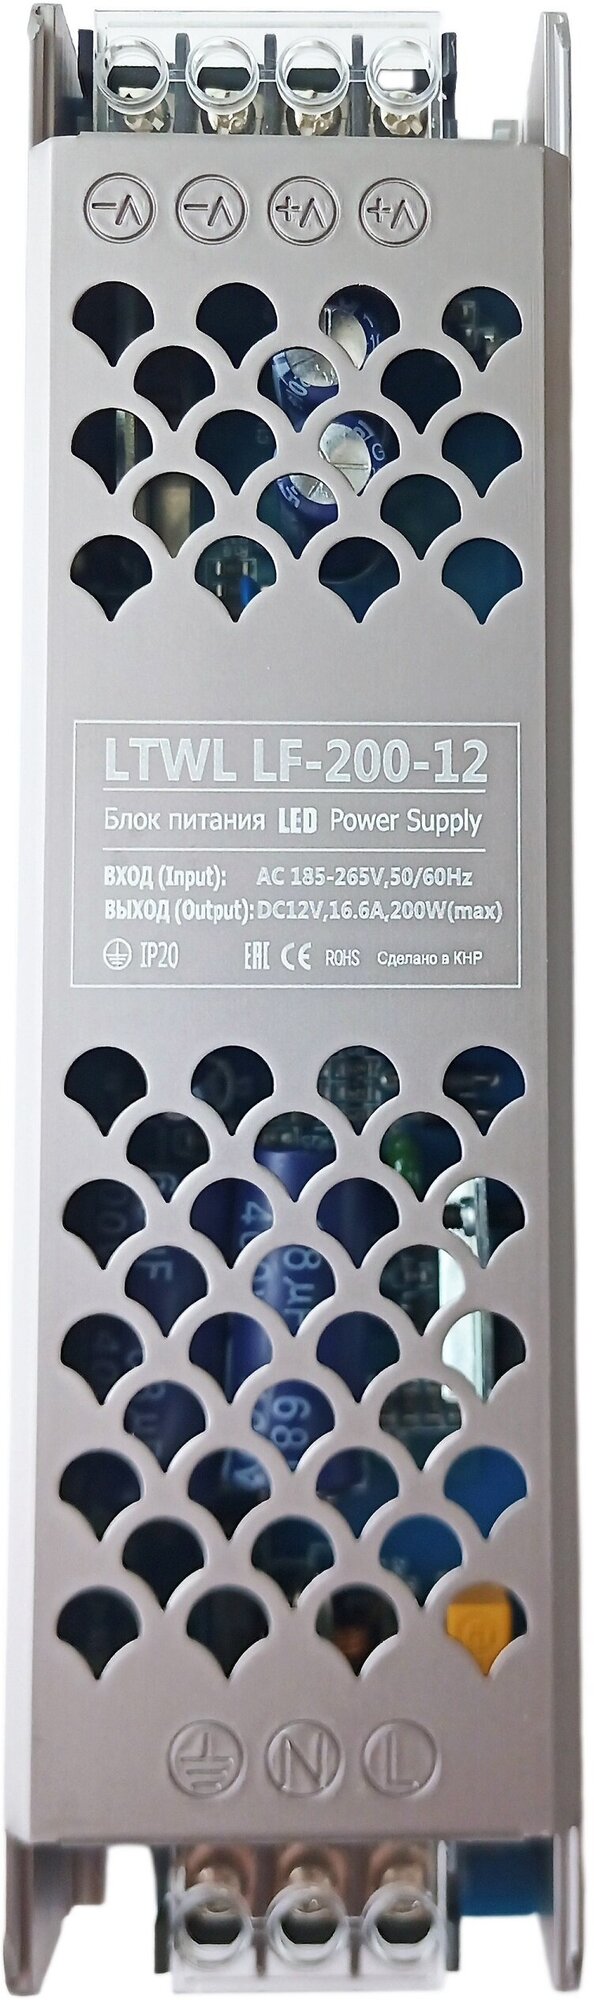 Блок питания 12V, мощность 200Вт - LTWL LF-200-12 - для светодиодной ленты, LED ламп. Компактные размеры: 178х49х29 мм, надежная конструкция - фотография № 3